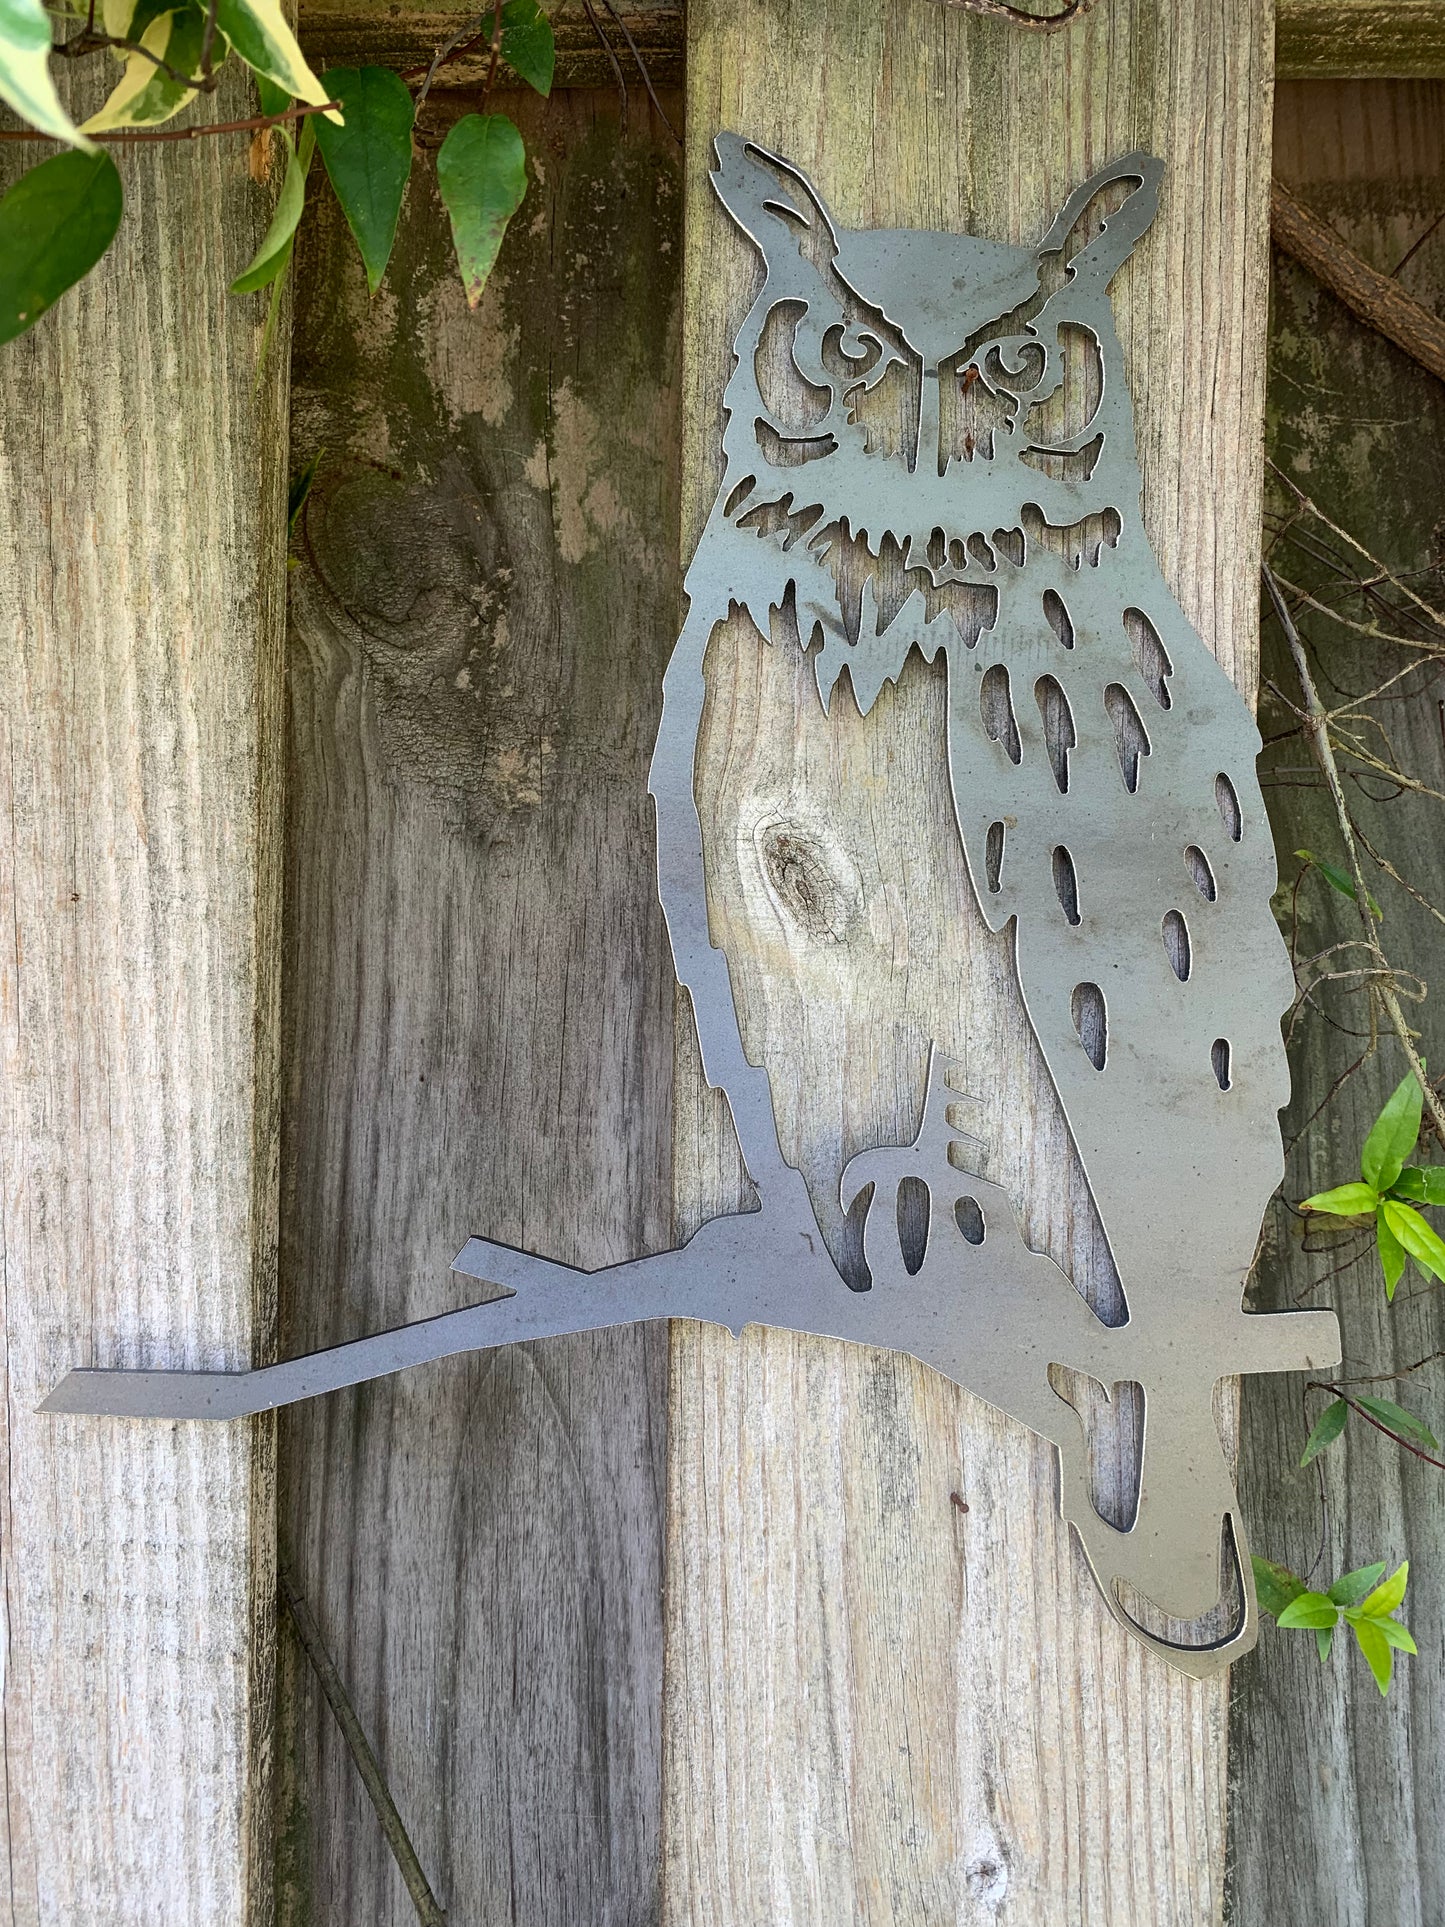 Owl Tree Bird